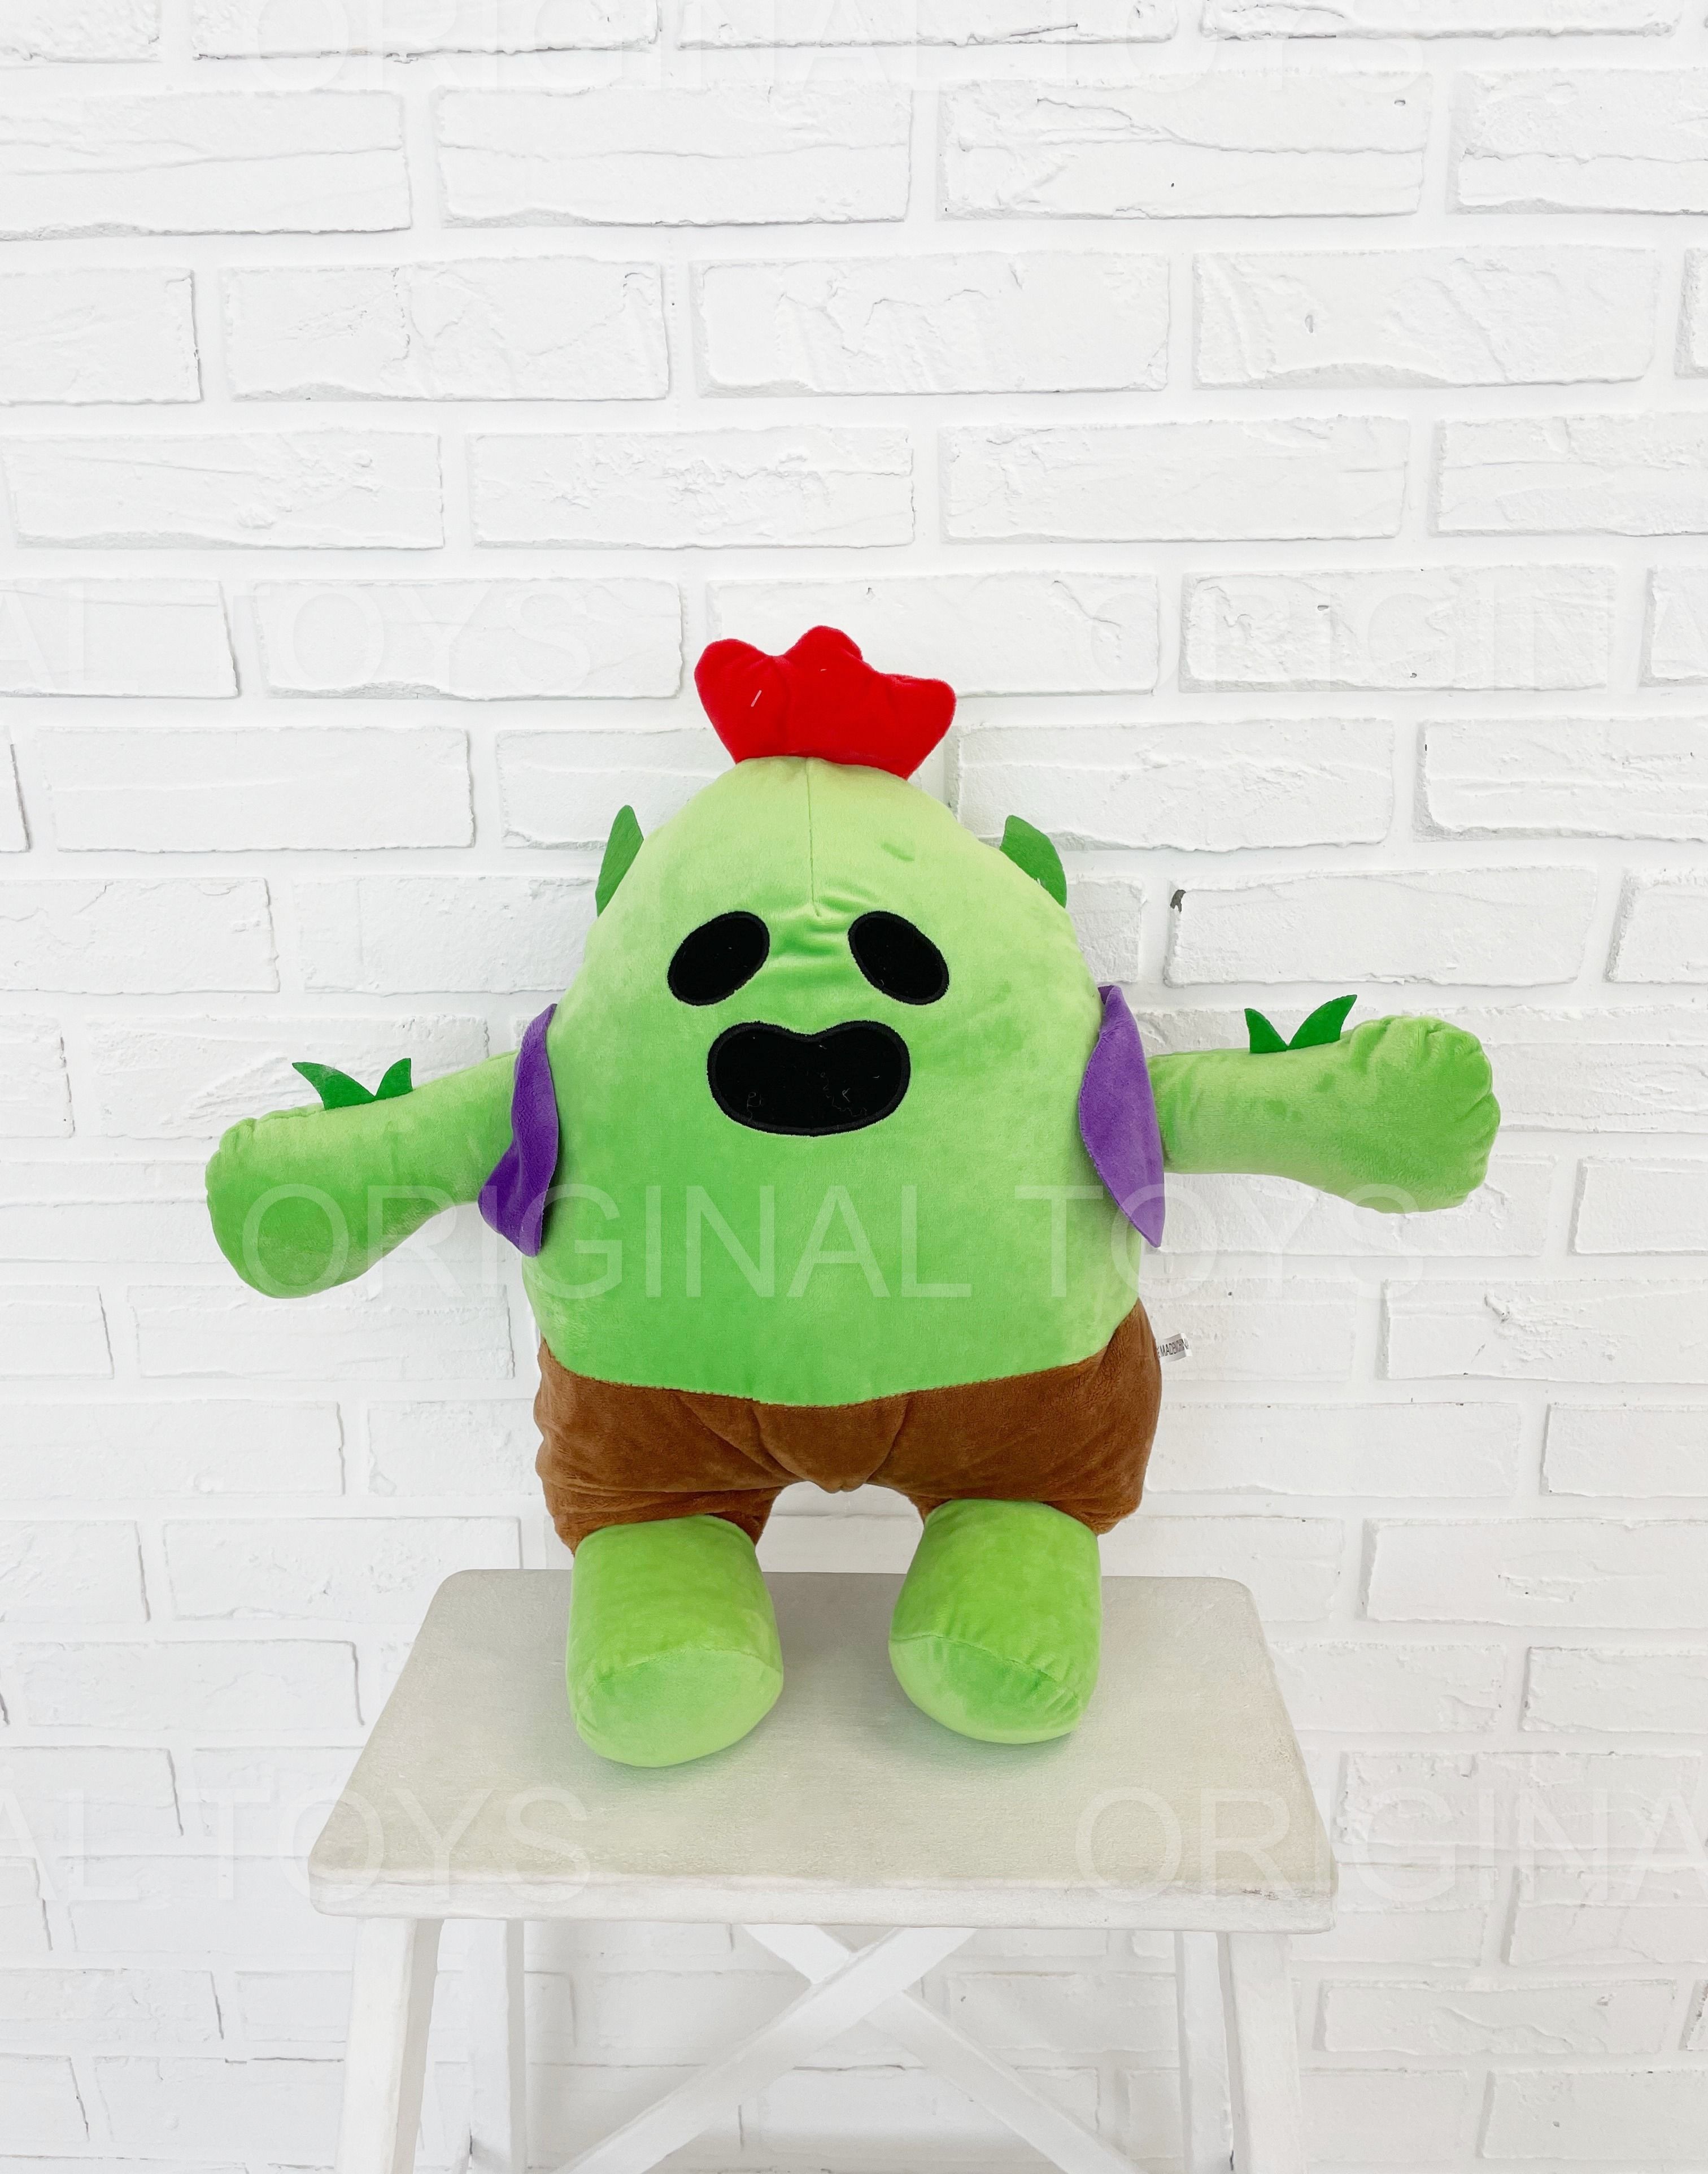 Мягкая игрушка Большой Спайк, Бравл Старс, зеленый 45 см, Brawl